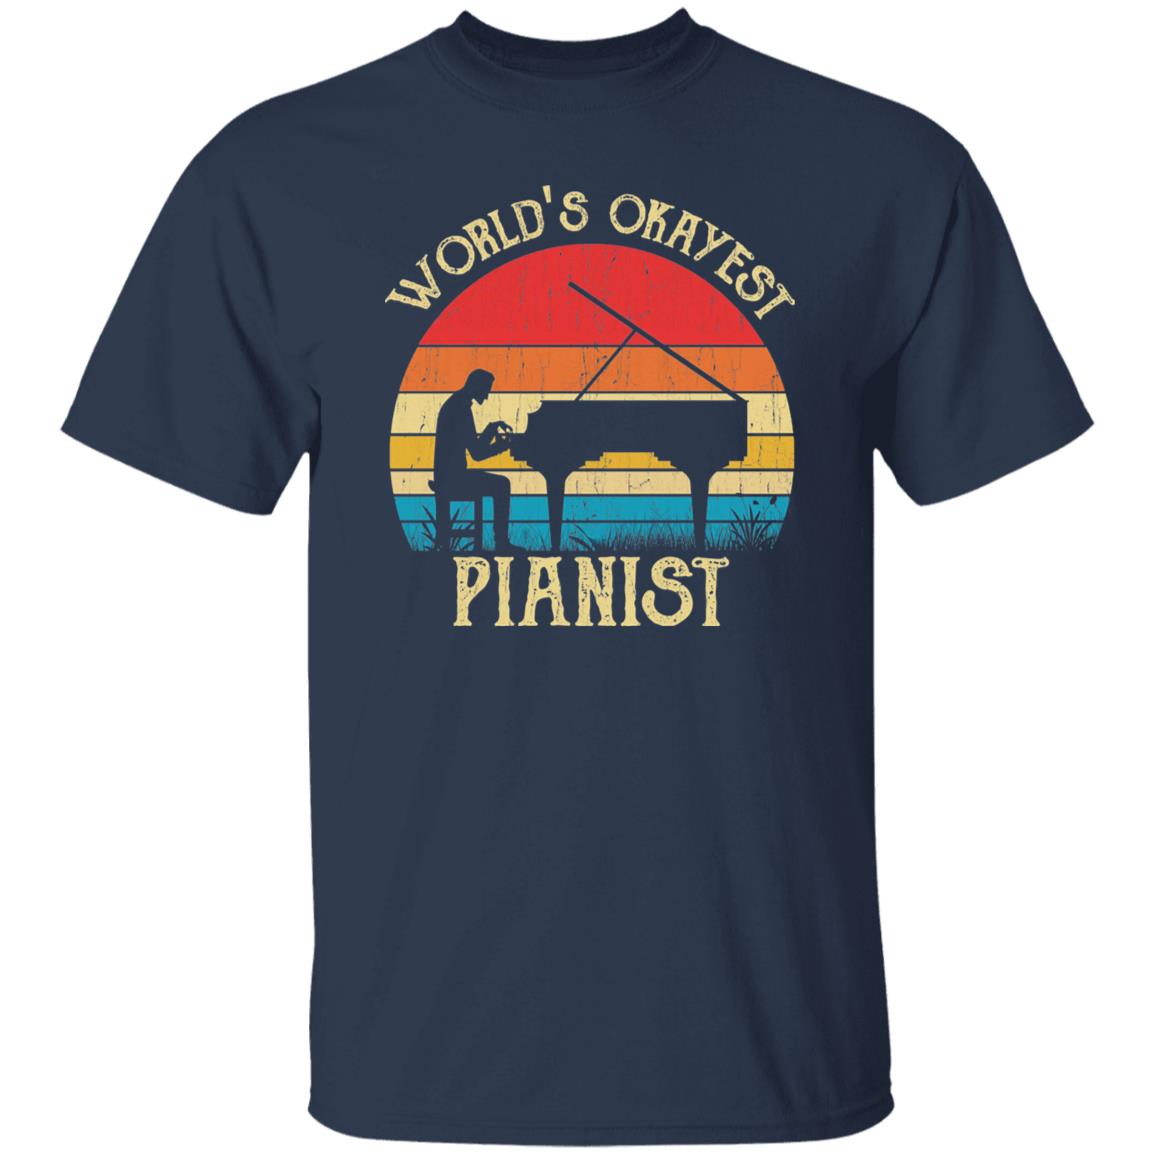 World's Okayest Pianist Retro Style Unisex T-shirt Black Navy Dark Heather-Navy-Family-Gift-Planet